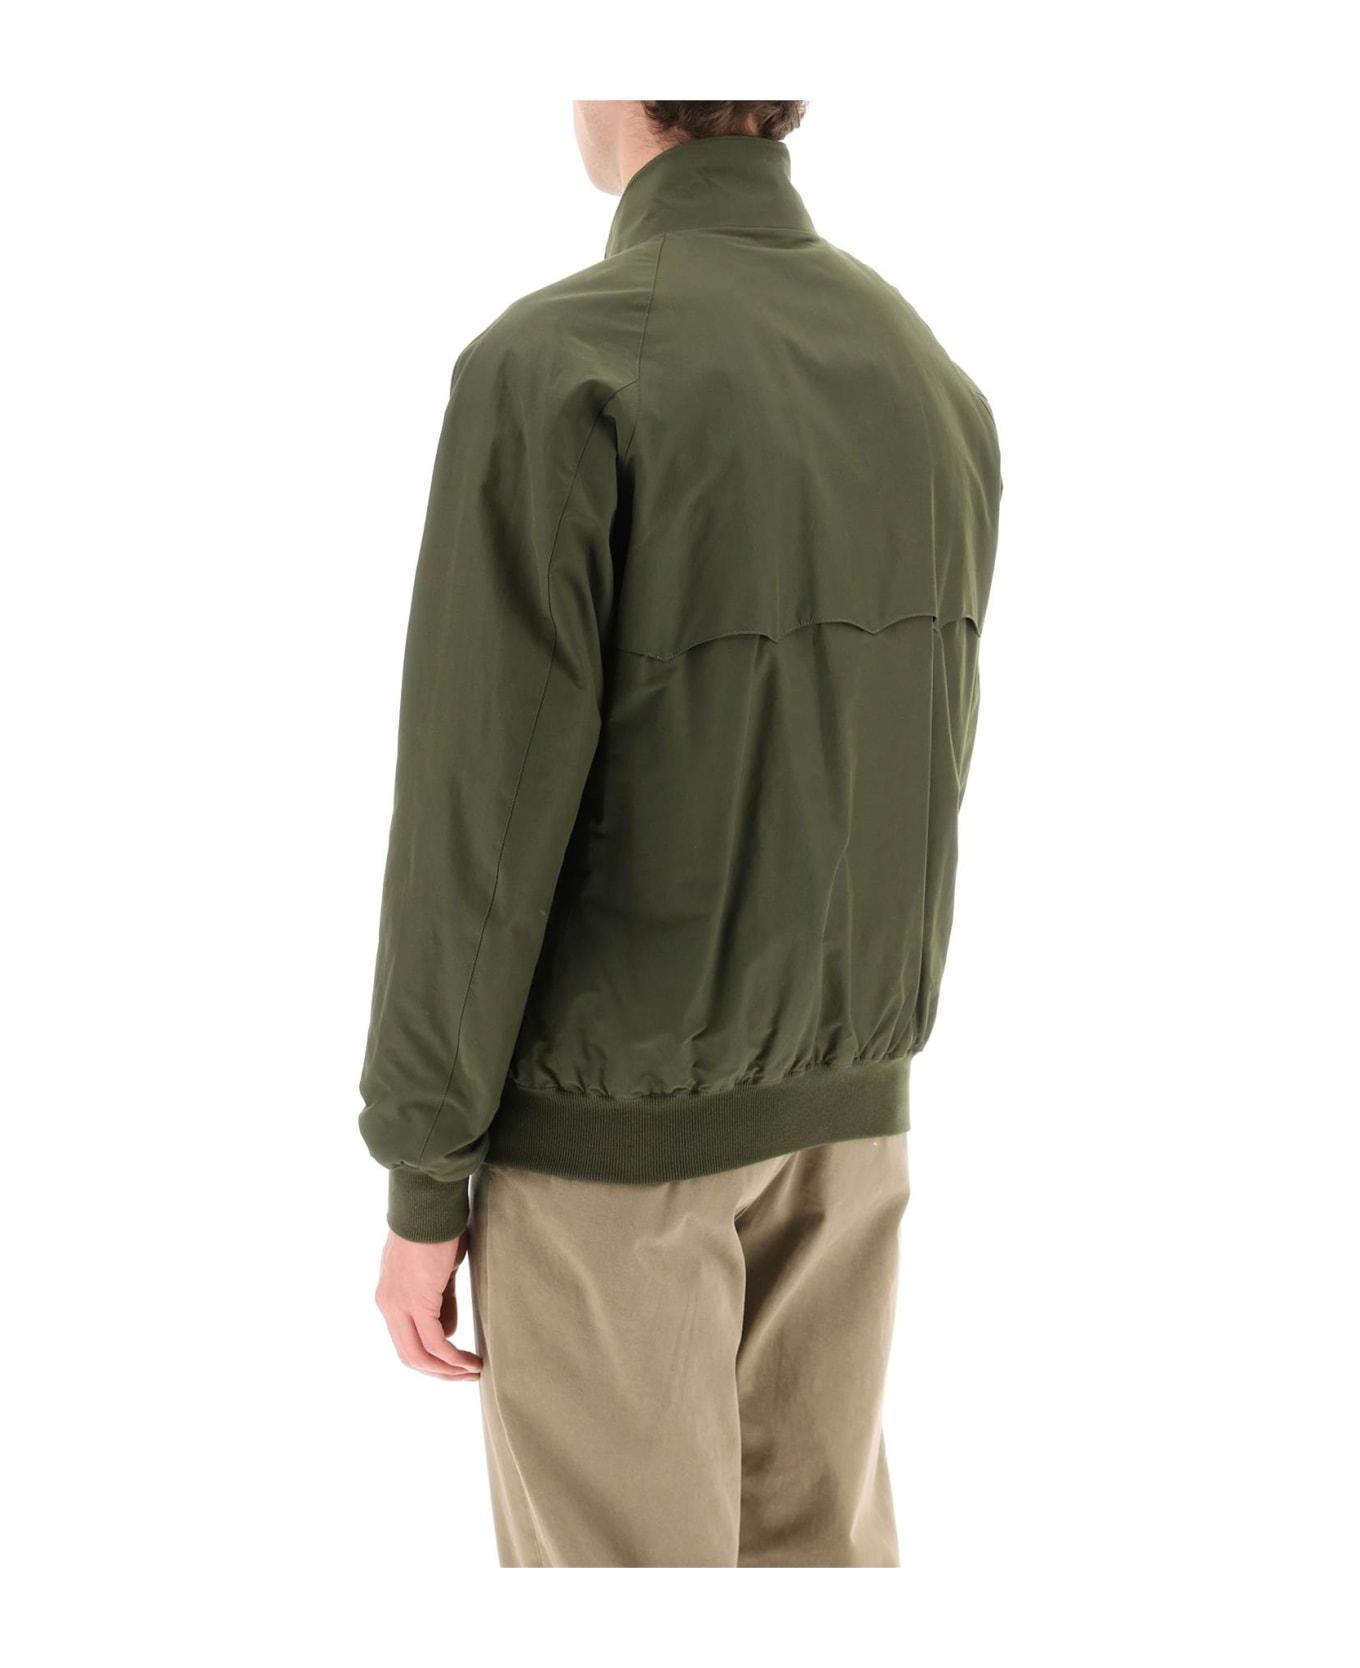 Baracuta G9 Harrington Jacket - BEECH (Green)